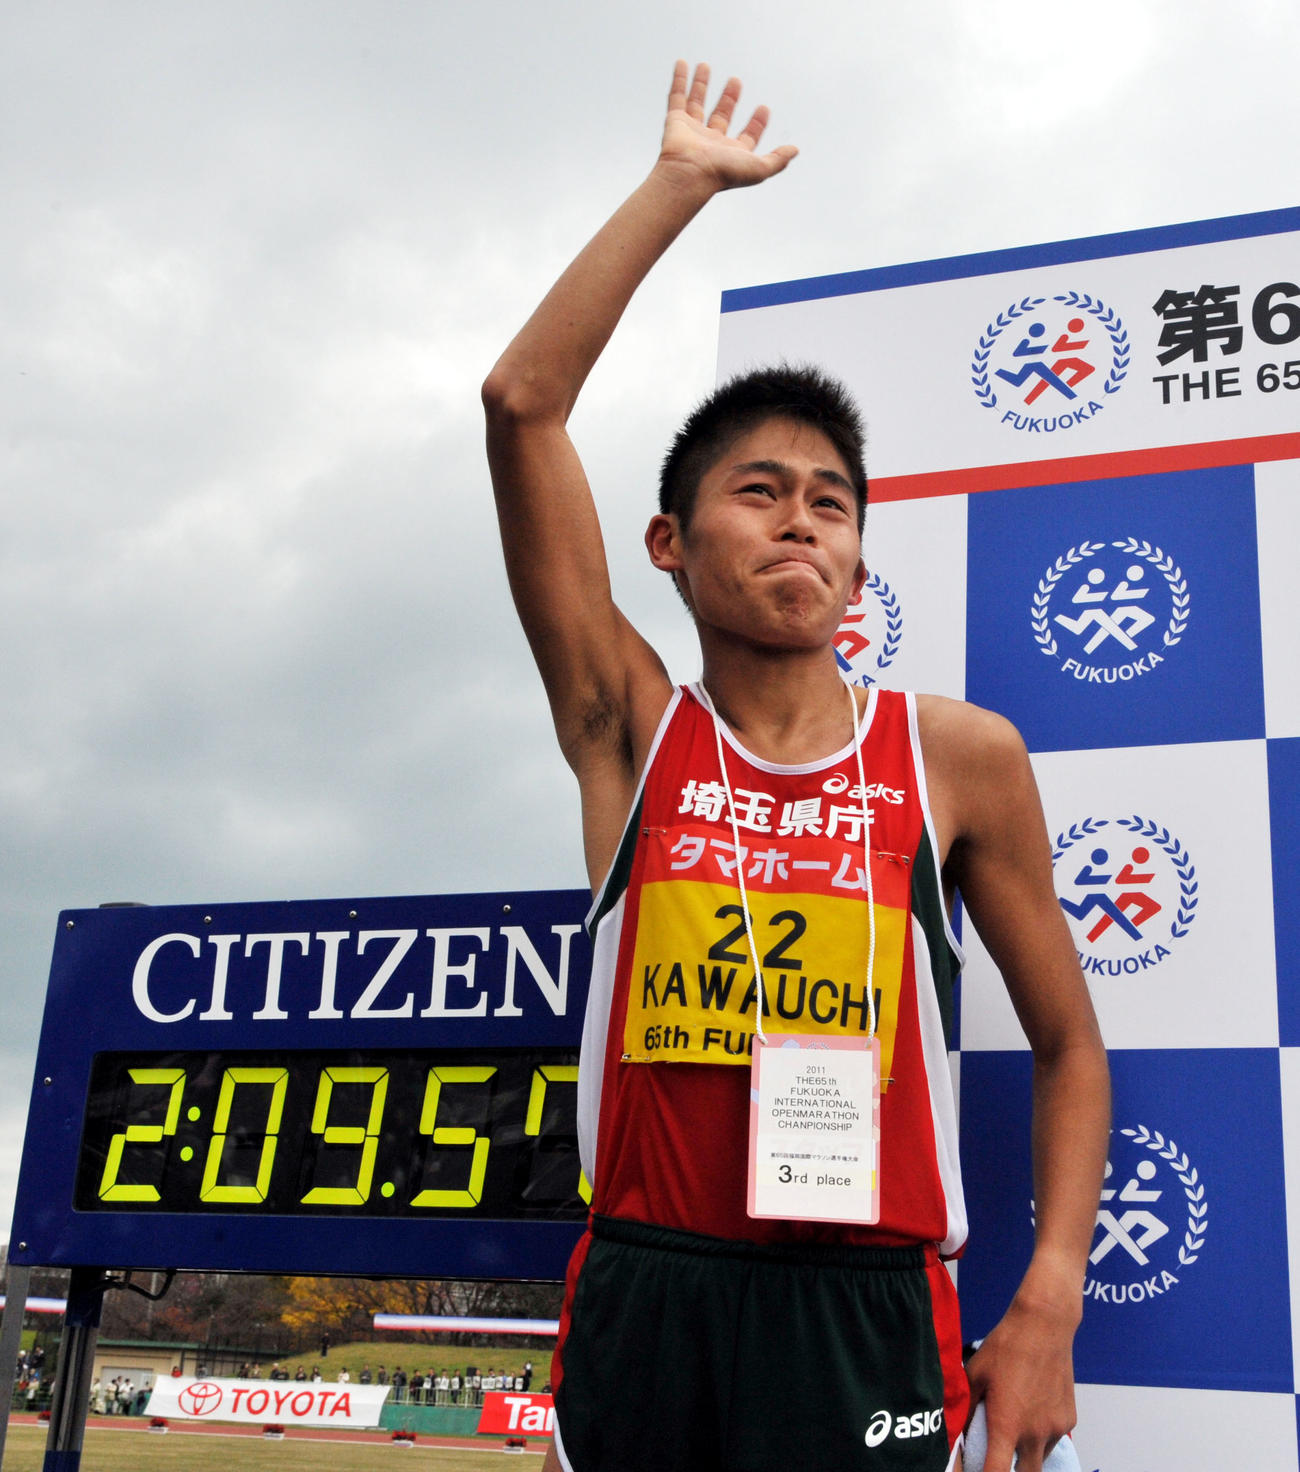 11年、日本人トップの3位に入った川内は、涙をこらえながらファンの声援に手を振って応える